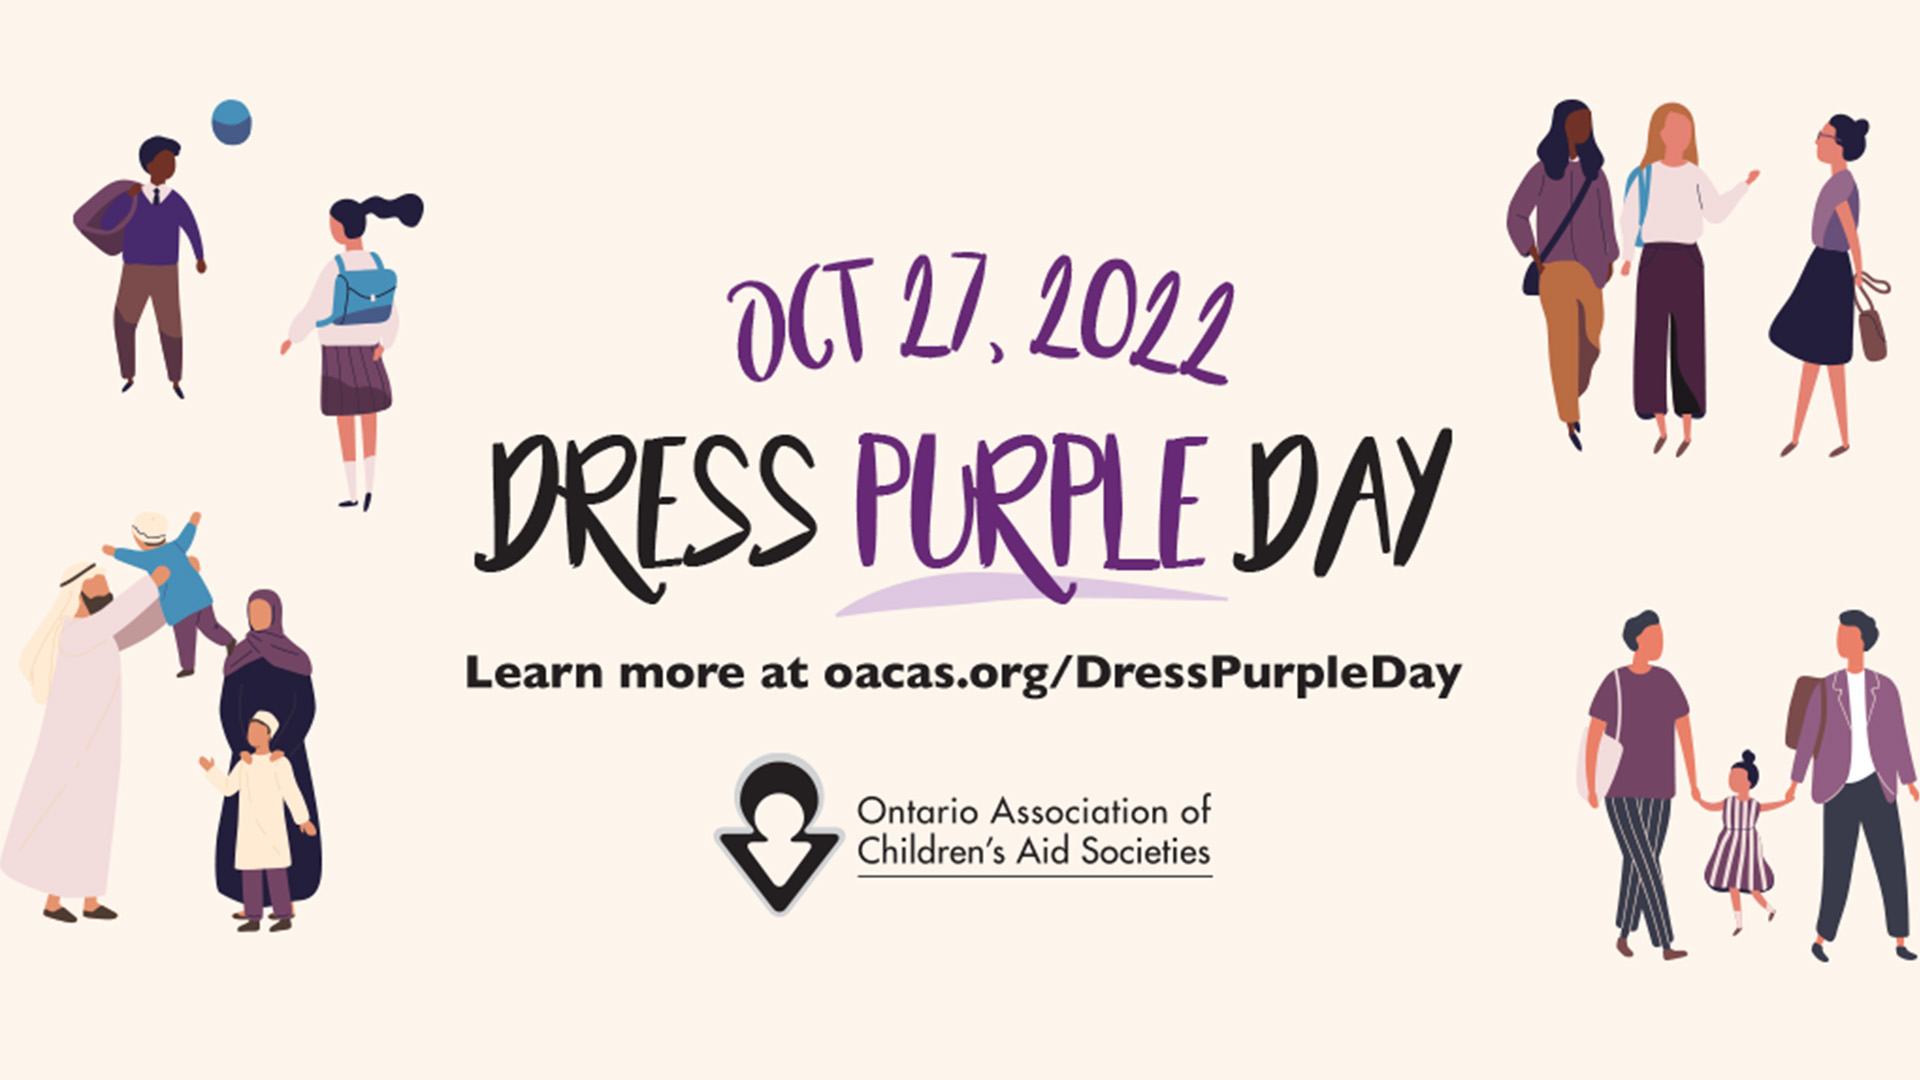 Hãy cùng chúng tôi lan tỏa những thông điệp đầy ý nghĩa trong ngày Awareness Dress Purple Day. Ngày này được tổ chức nhằm tăng cường nhận thức về nạn bạo lực gia đình và gây quỹ để giúp đỡ các nạn nhân của nó.